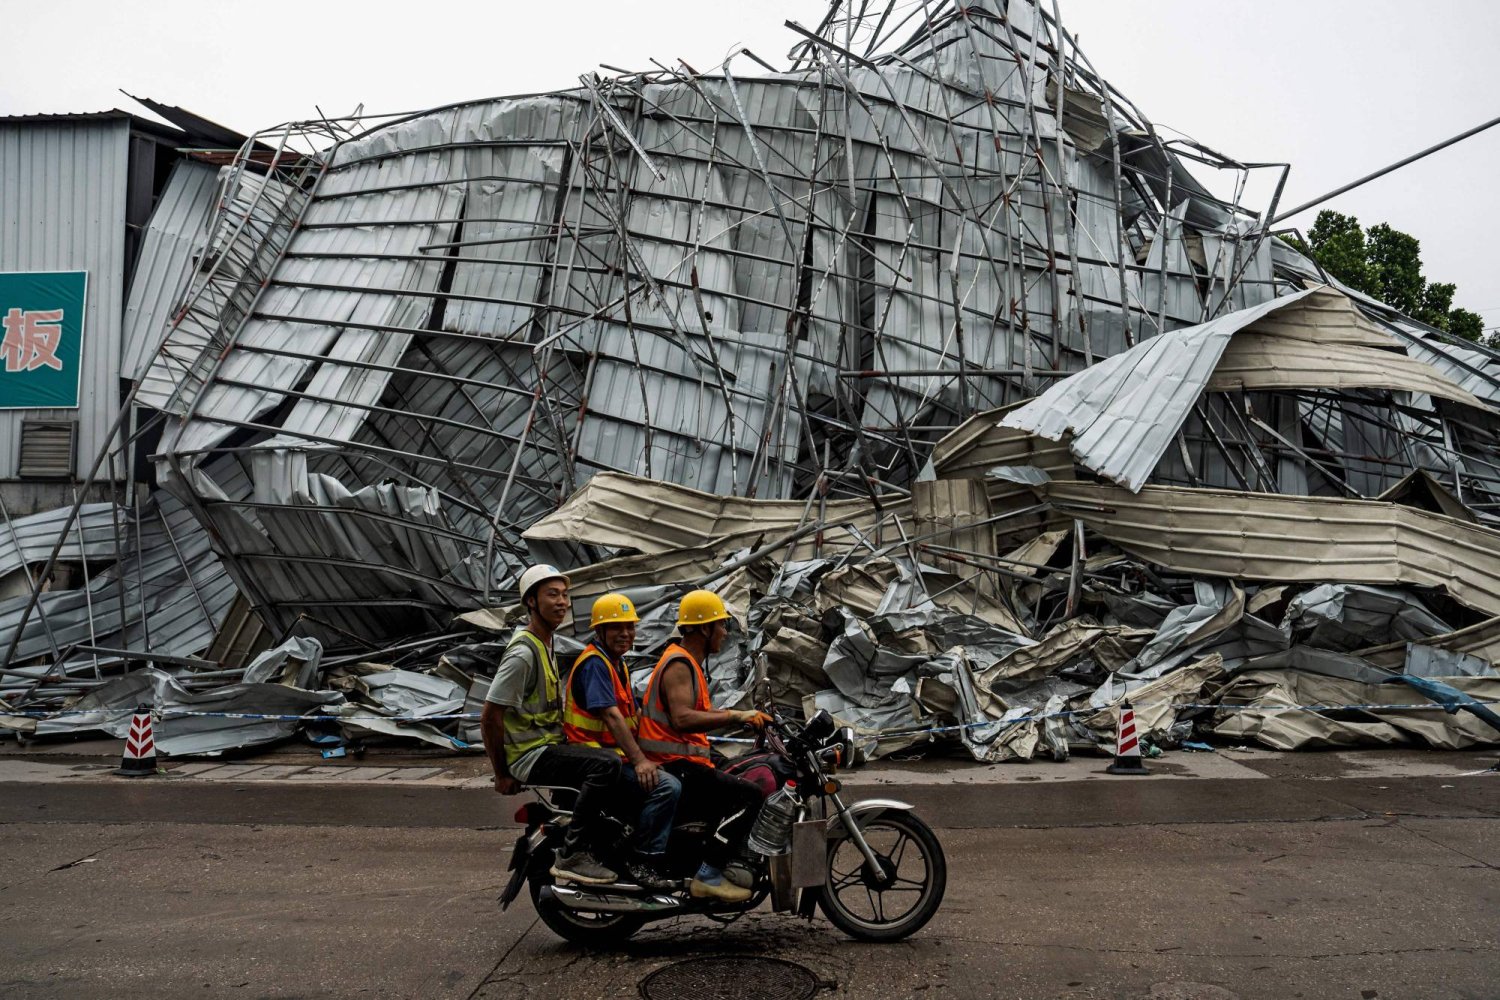 أشخاص يمرون من أمام مبنى متضرر بعد أن ضرب إعصار غوانجو في مقاطعة جوانجدونج بجنوب الصين (أ.ف.ب)